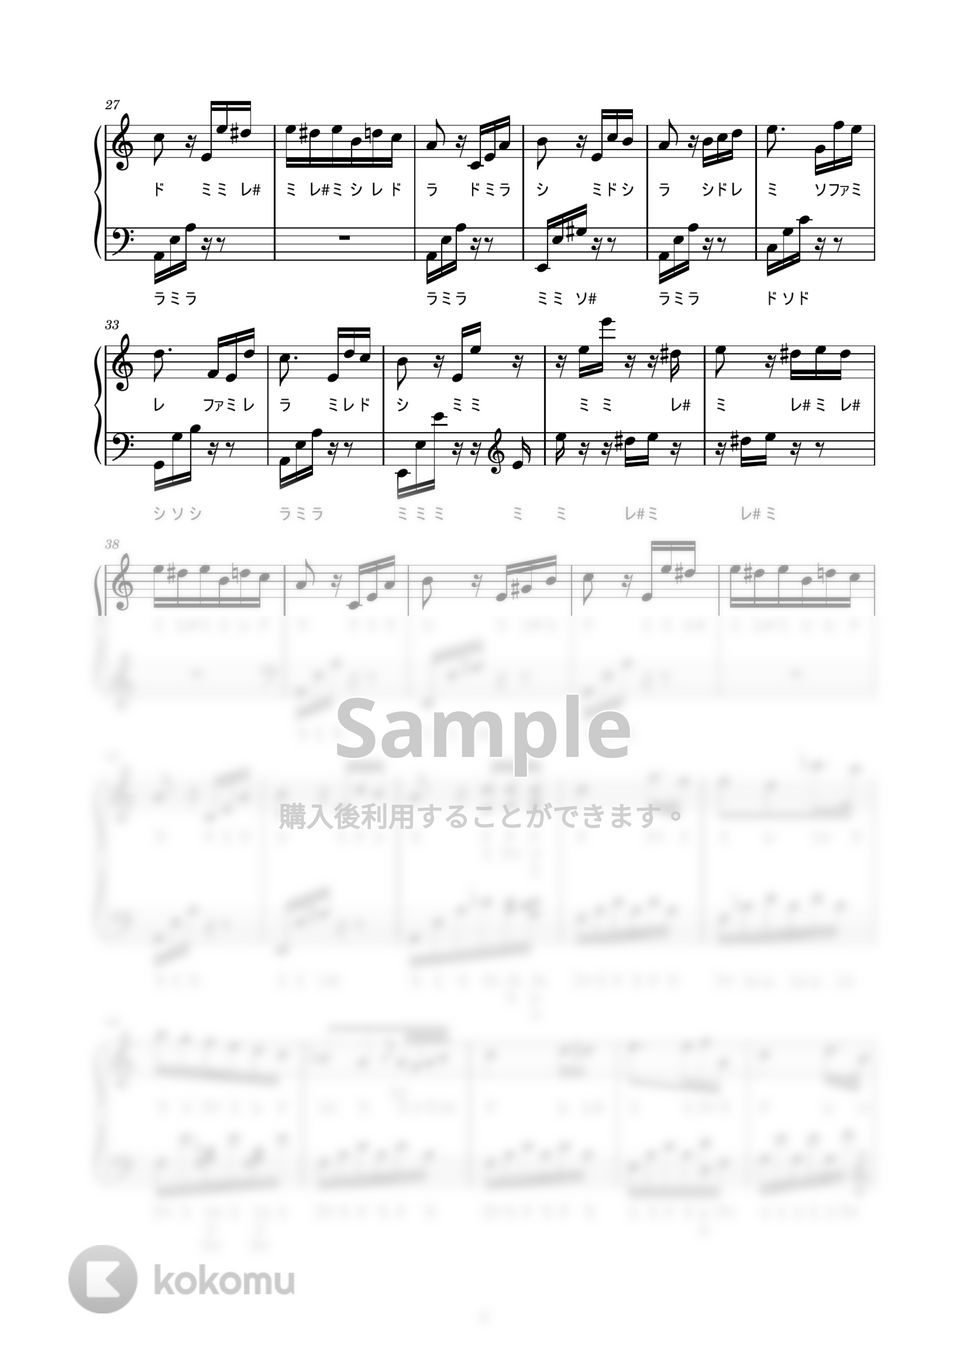 ベートーヴェン - エリーゼのために (かんたん / 歌詞付き / ドレミ付き / 初心者) by piano.tokyo